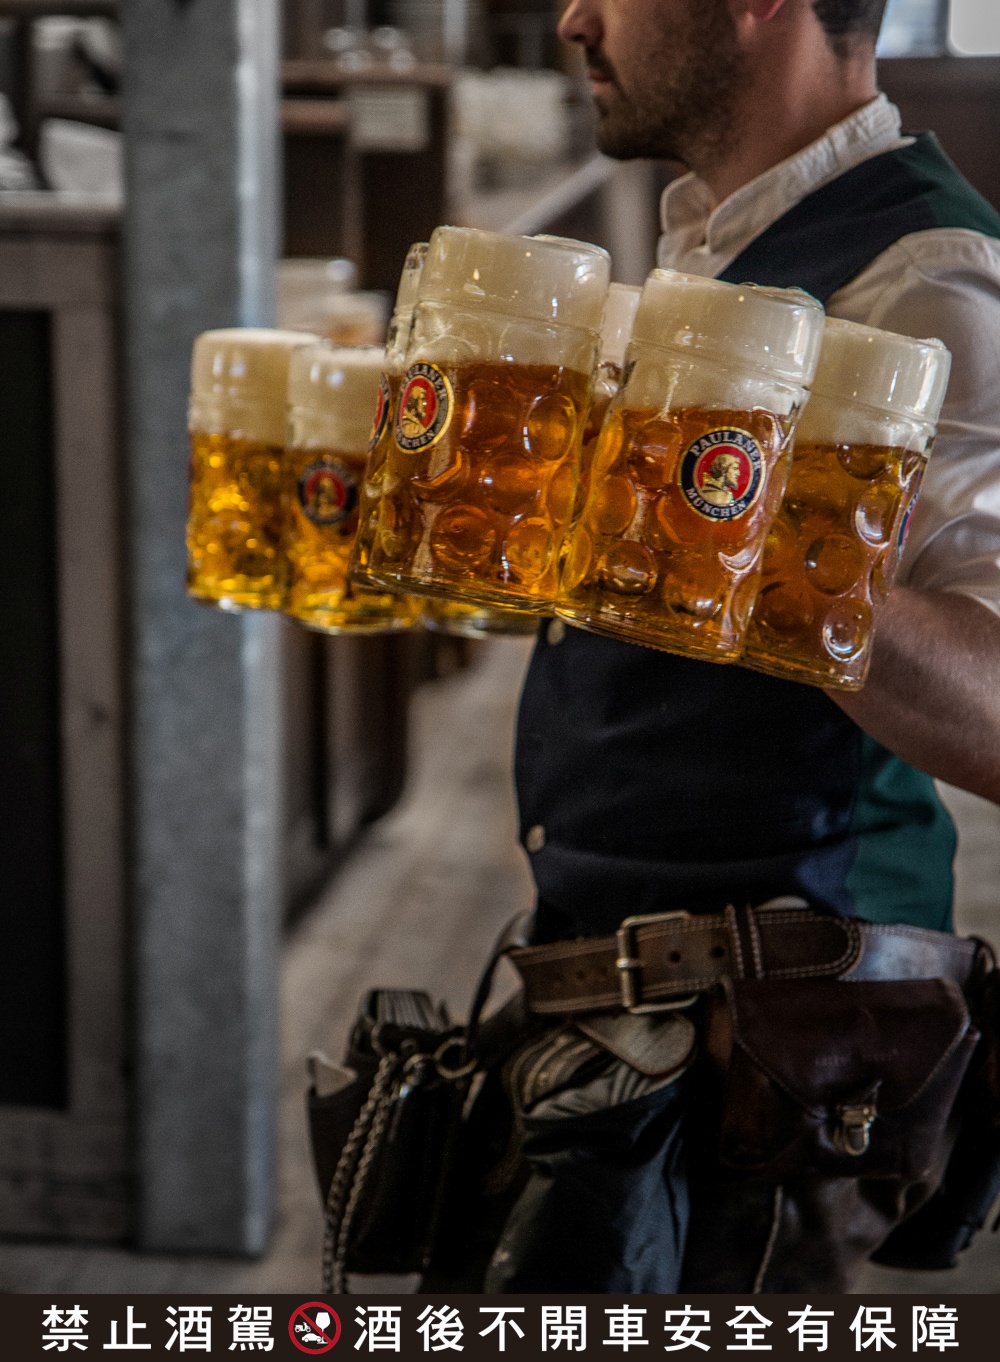 德國啤酒 保拉納 Paulaner|進口啤酒推薦|慕尼黑啤酒節十月限定啤酒上市啦!!!